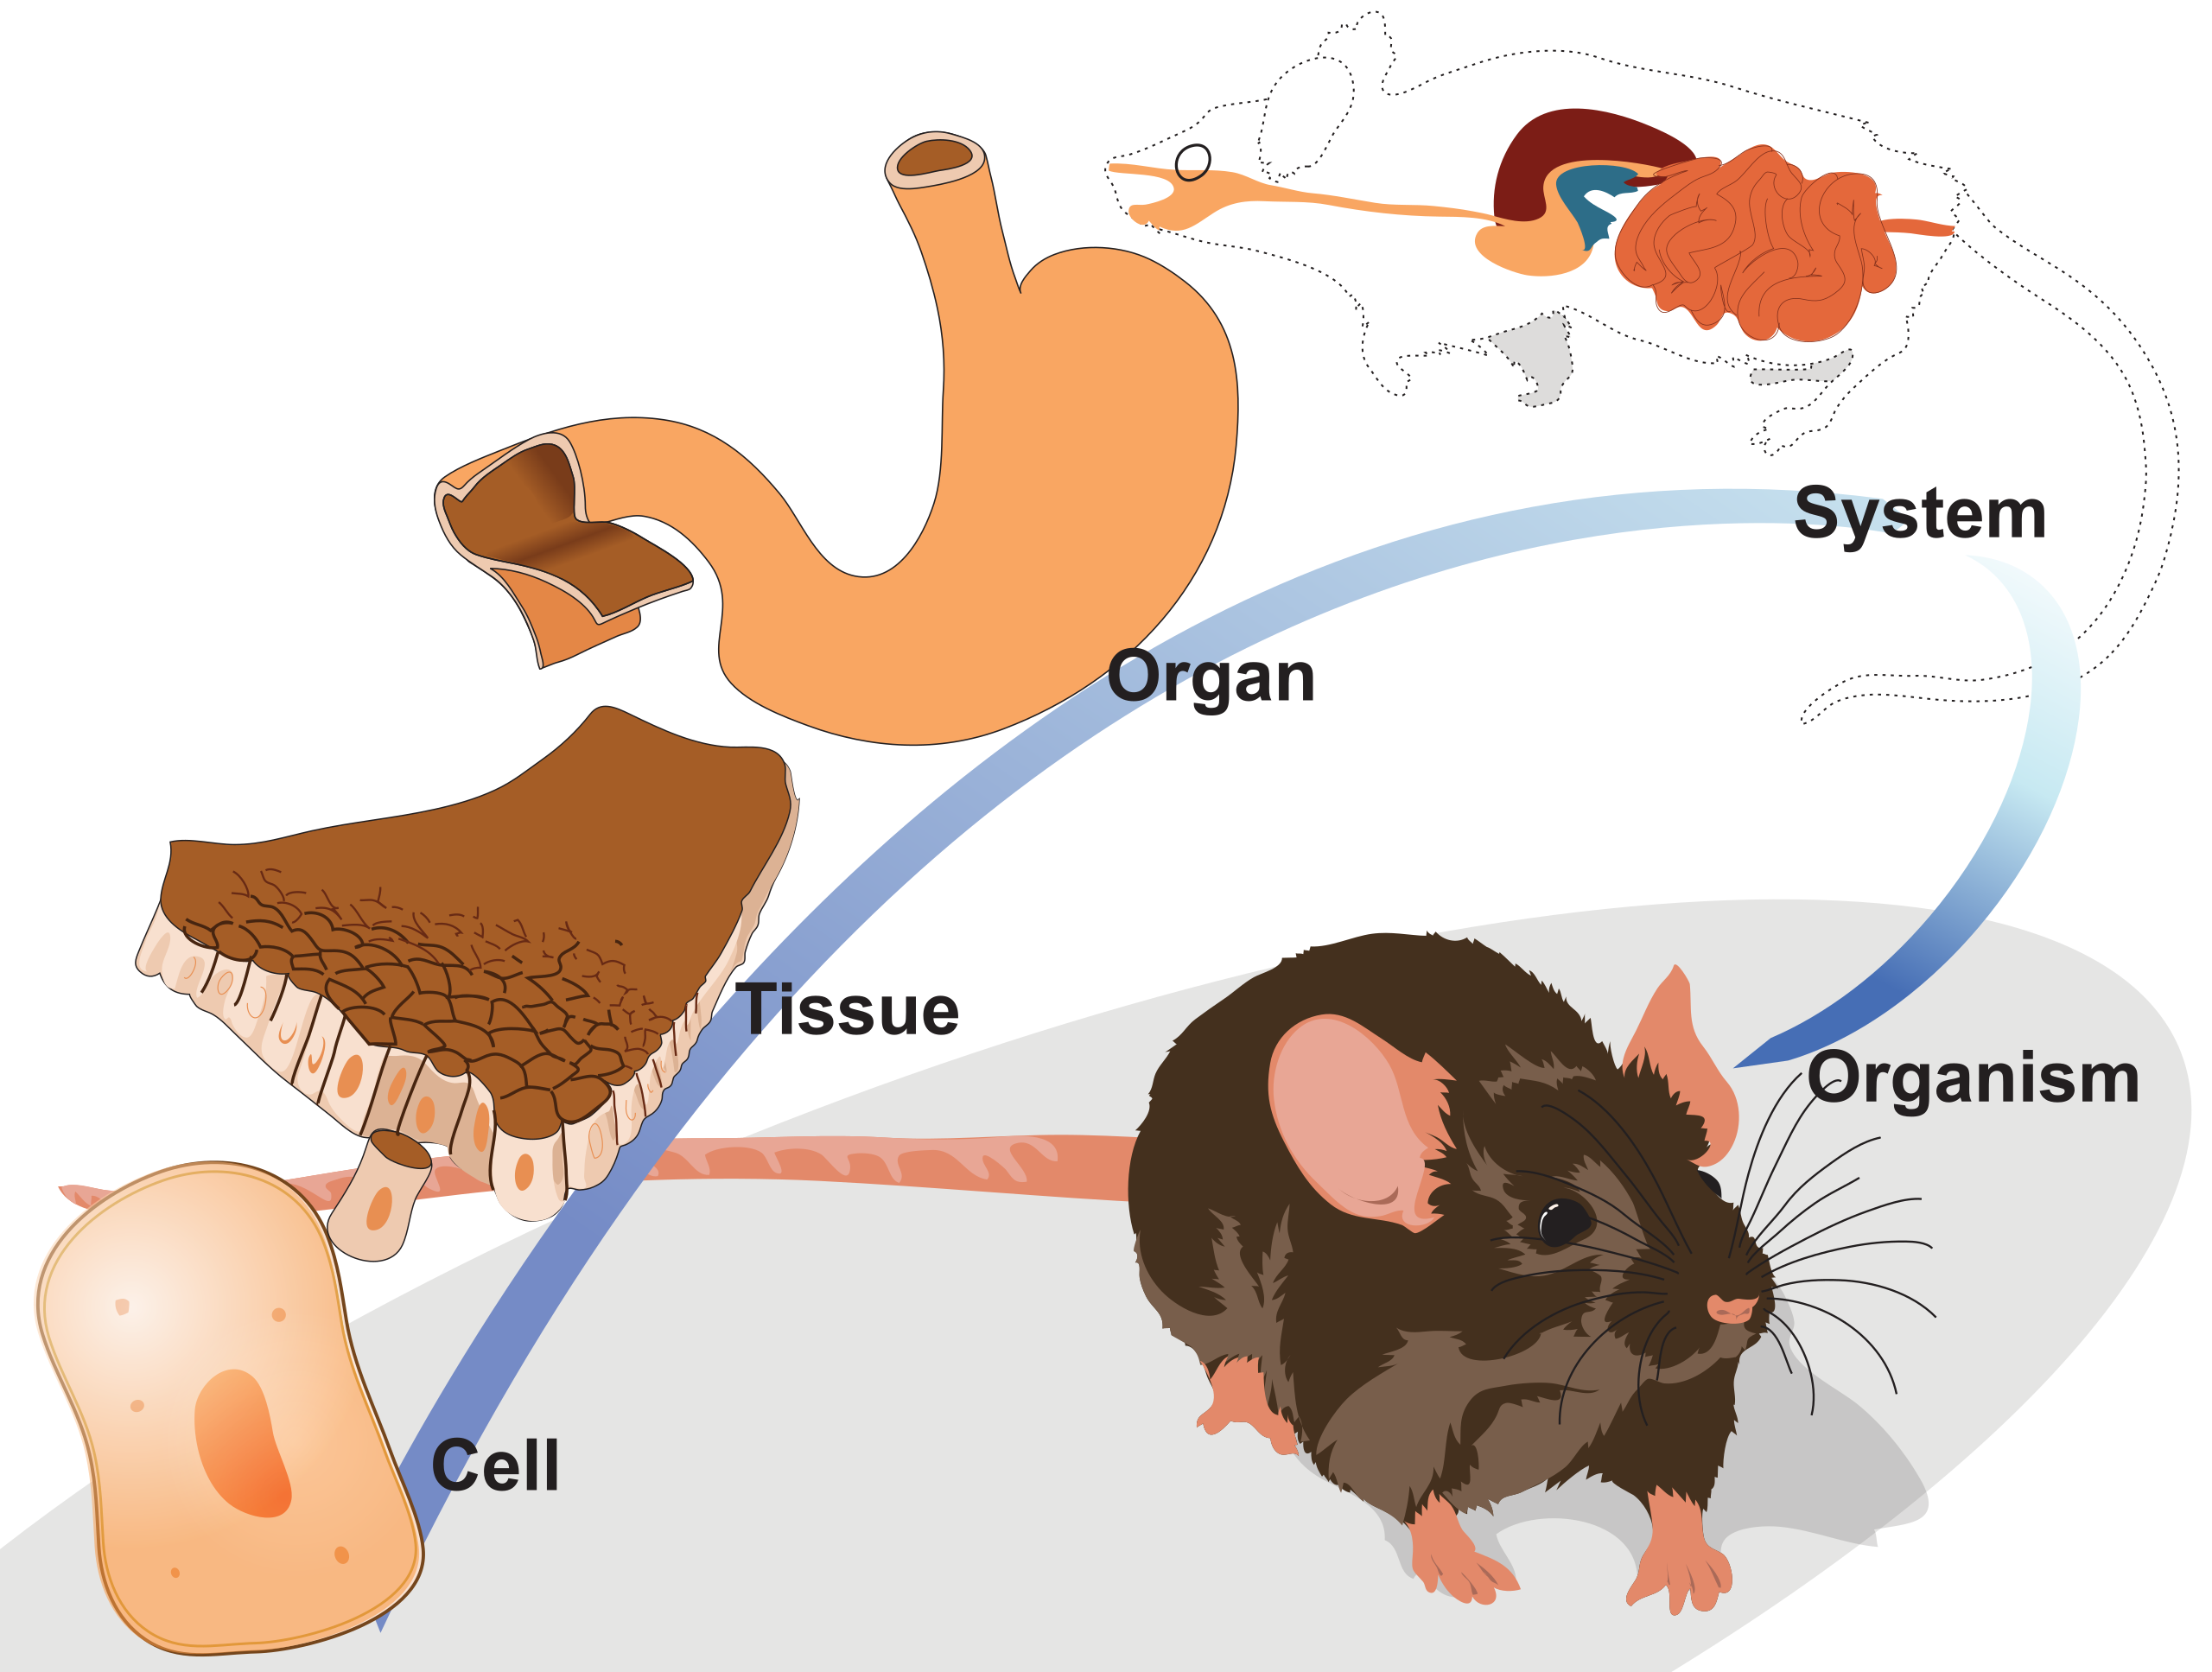 Animal organism. Клетка ткань орган система органов. Клетка ткань орган система органов организм животного. Схема клетка ткань орган система органов организм. И органы клетки организм ткани системы организмов.